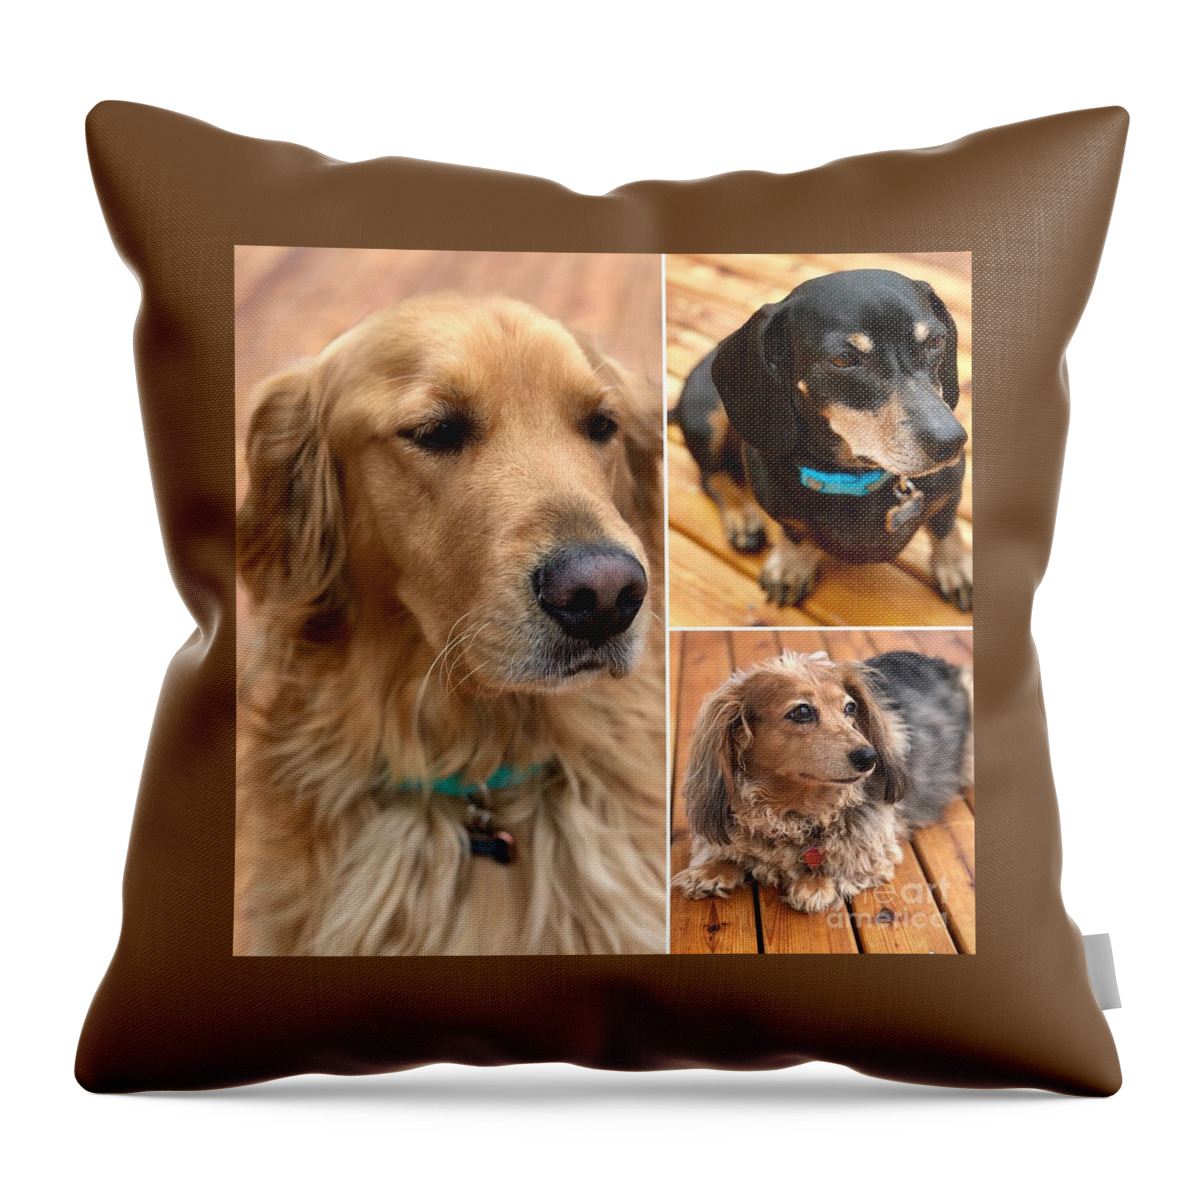 Three Amigos Throw Pillow featuring the photograph Three Amigos by Susan Garren